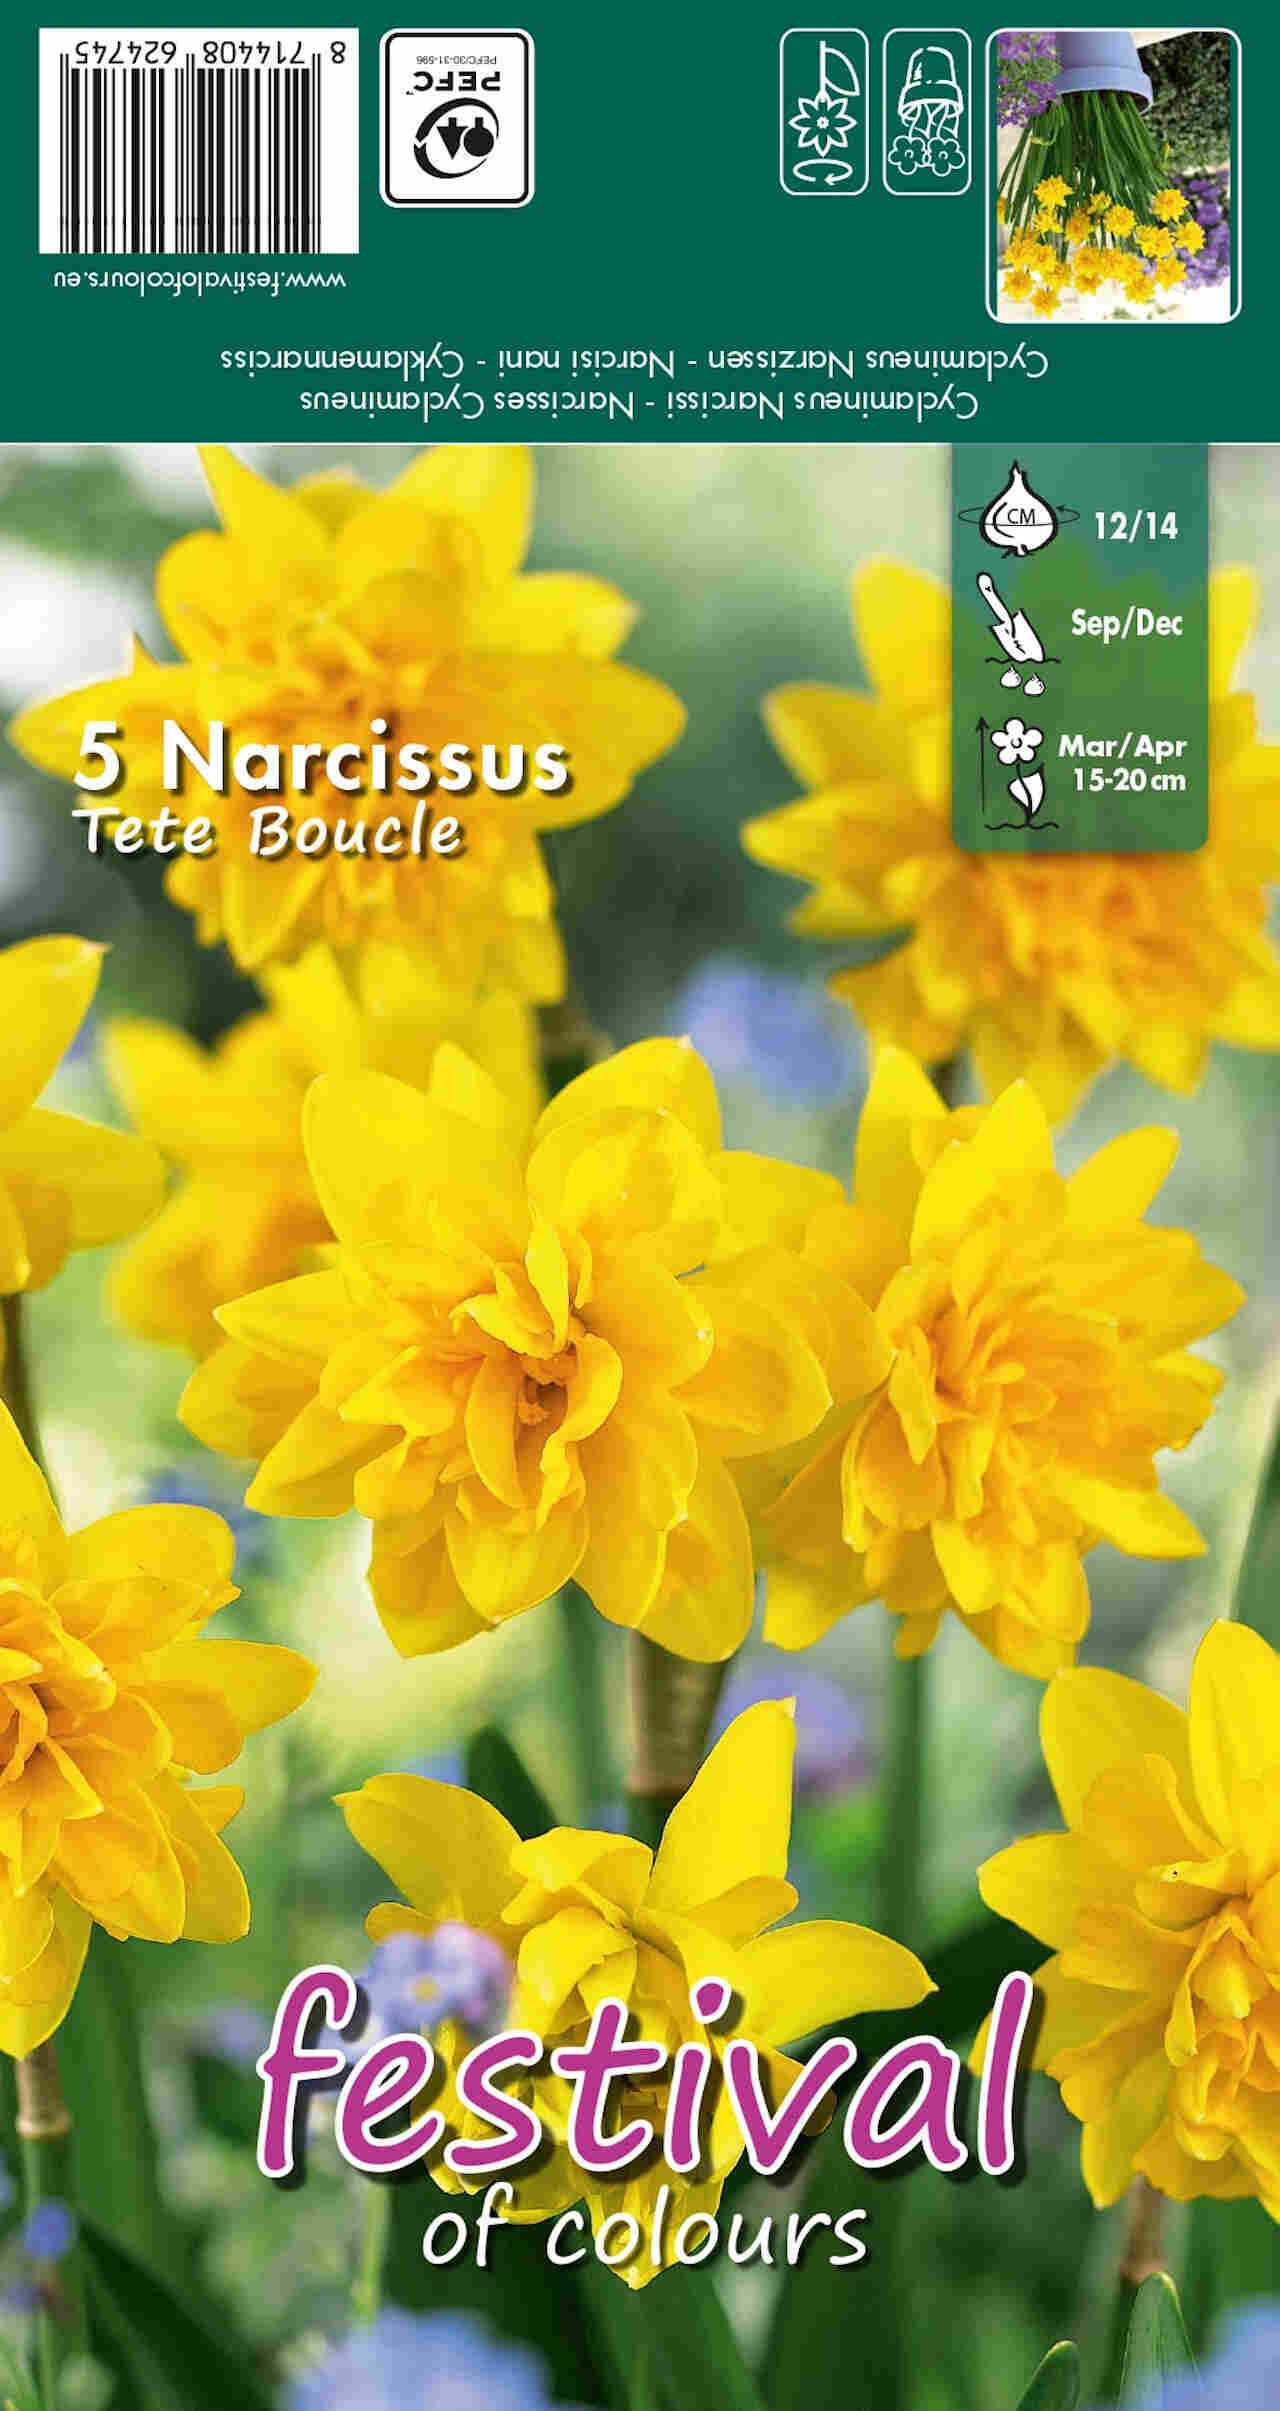 Påskelilje løg - Narcissus Tete Boucle 12/14